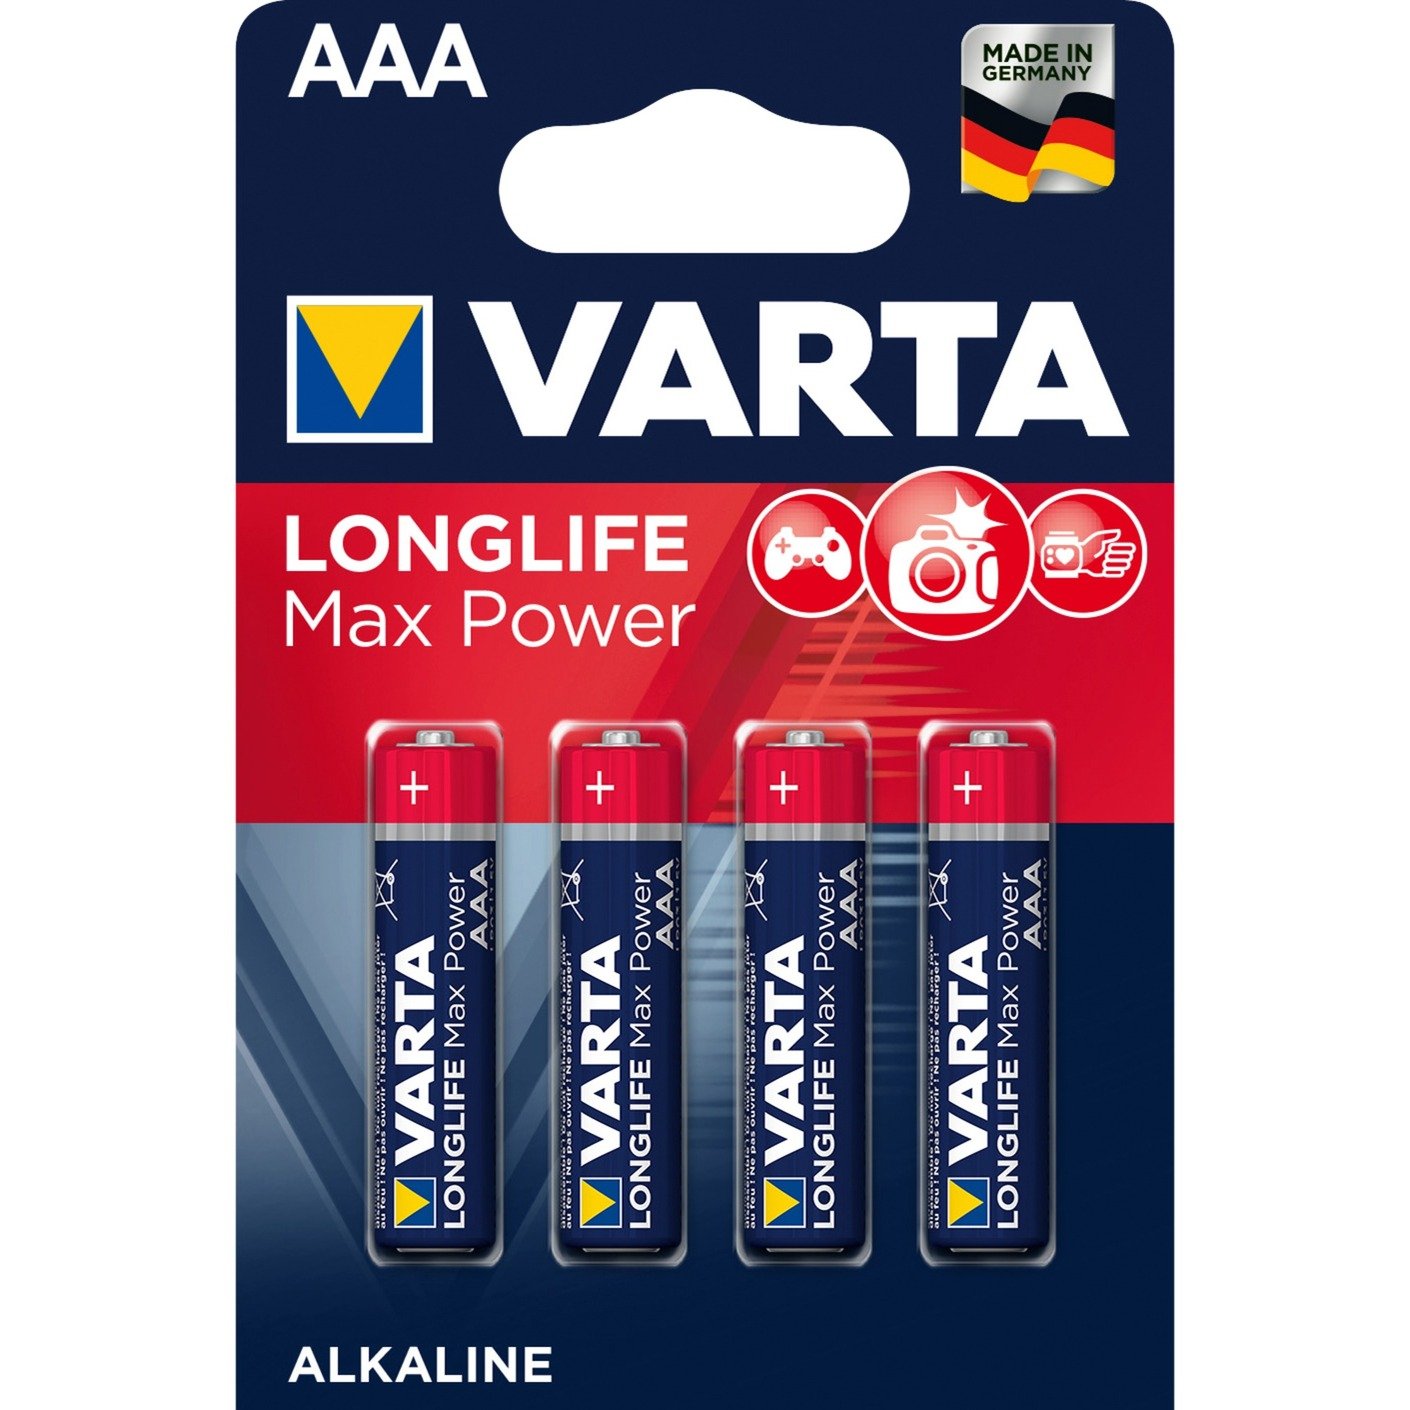 Longlife Max Power AAA, Batterie von Varta